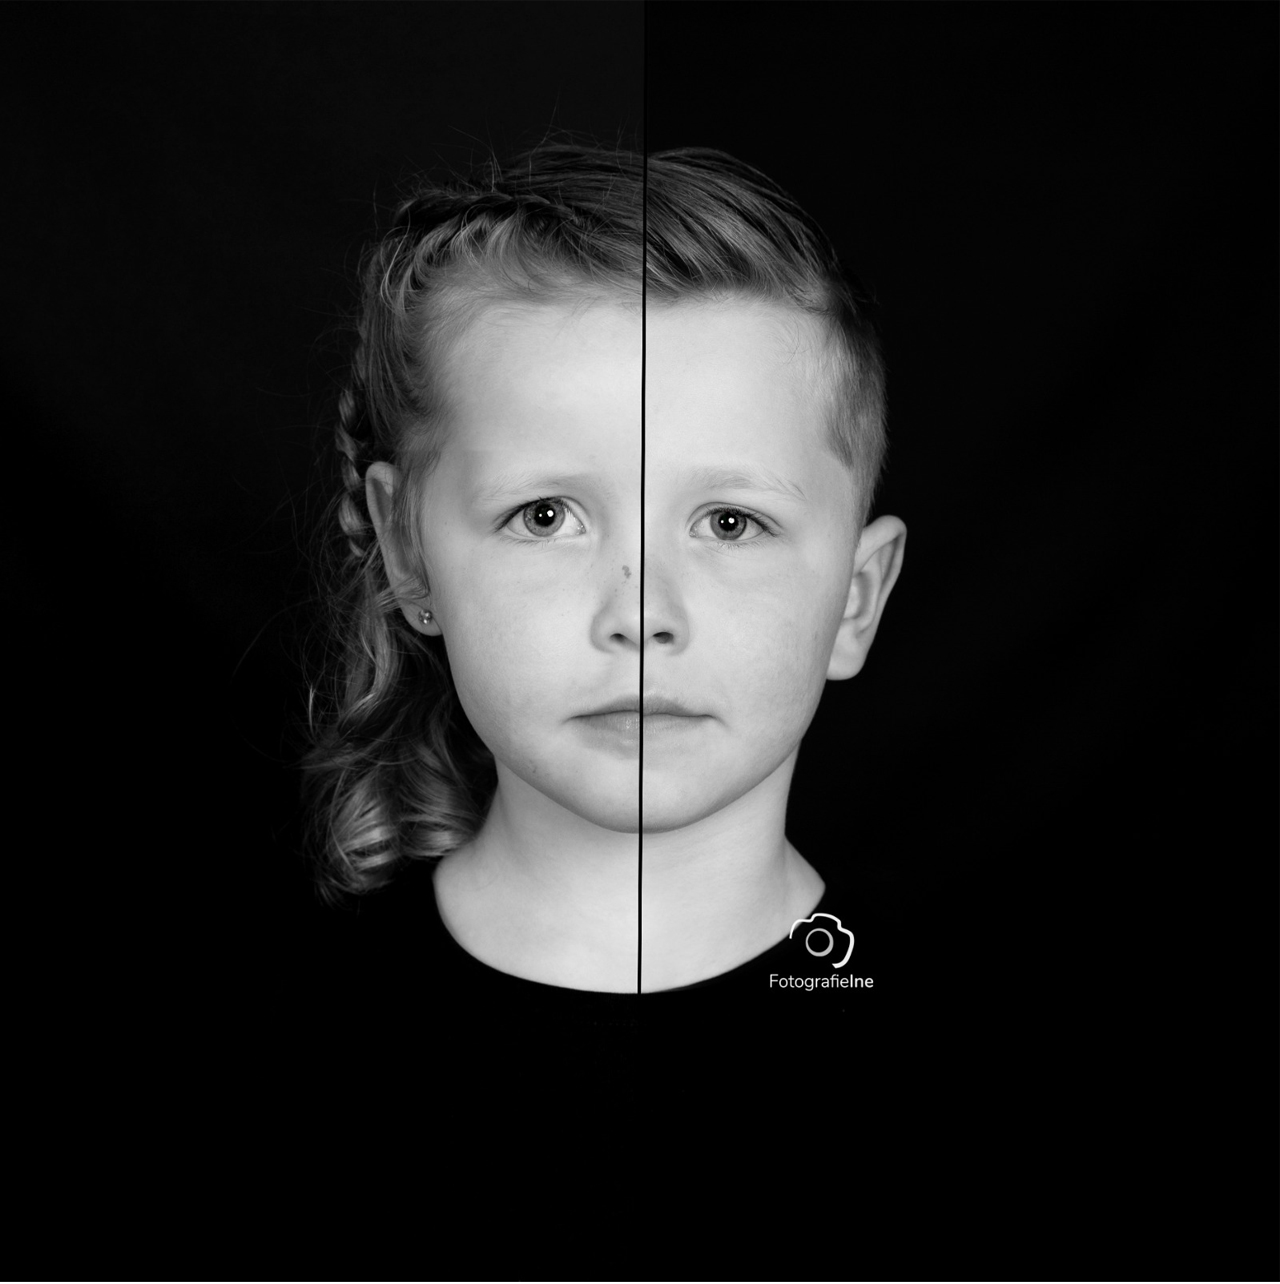 Fotografie Ine 2-1 samengestelde foto jongen-meisje zwart-wit foto